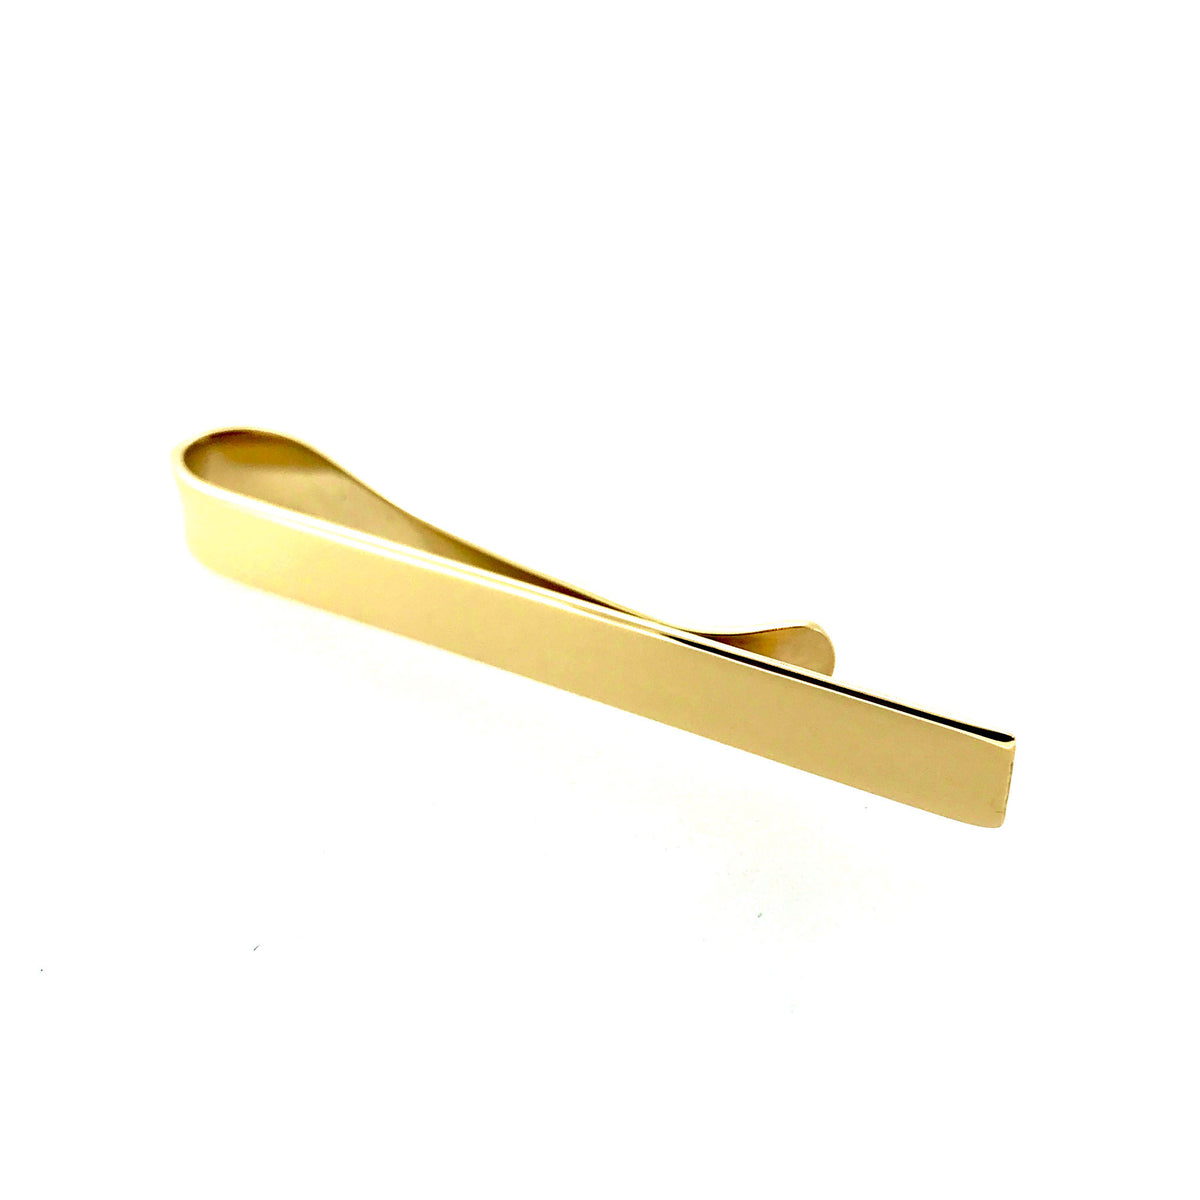 Premium 9ct Gold Tie Clip 6mm - Stylish Hallmarked Tie Slide | Roberts & Co